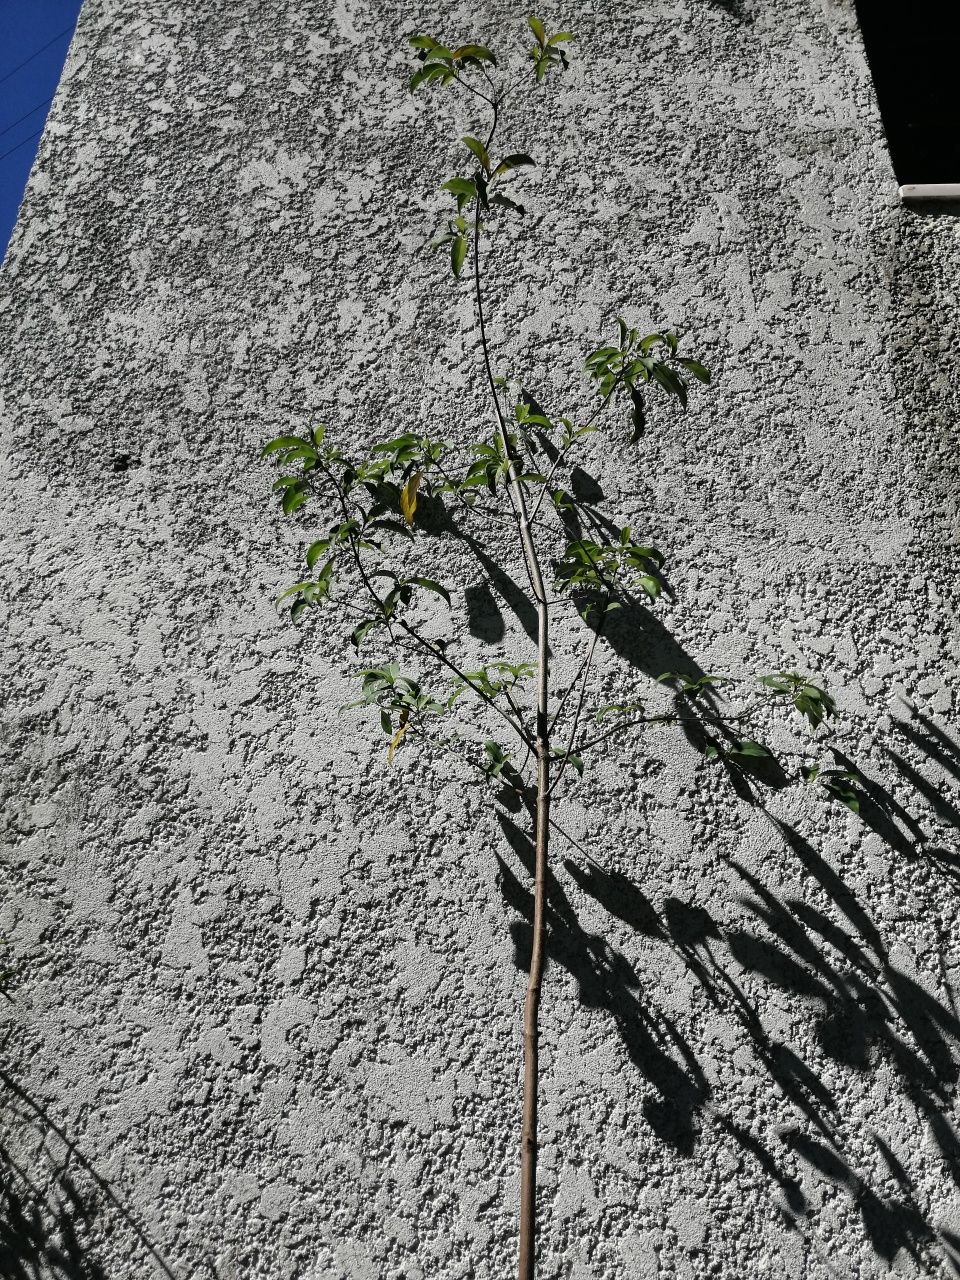 Arvore Cornus capitata  "Árvore-de-morangos-do-Himalaia"